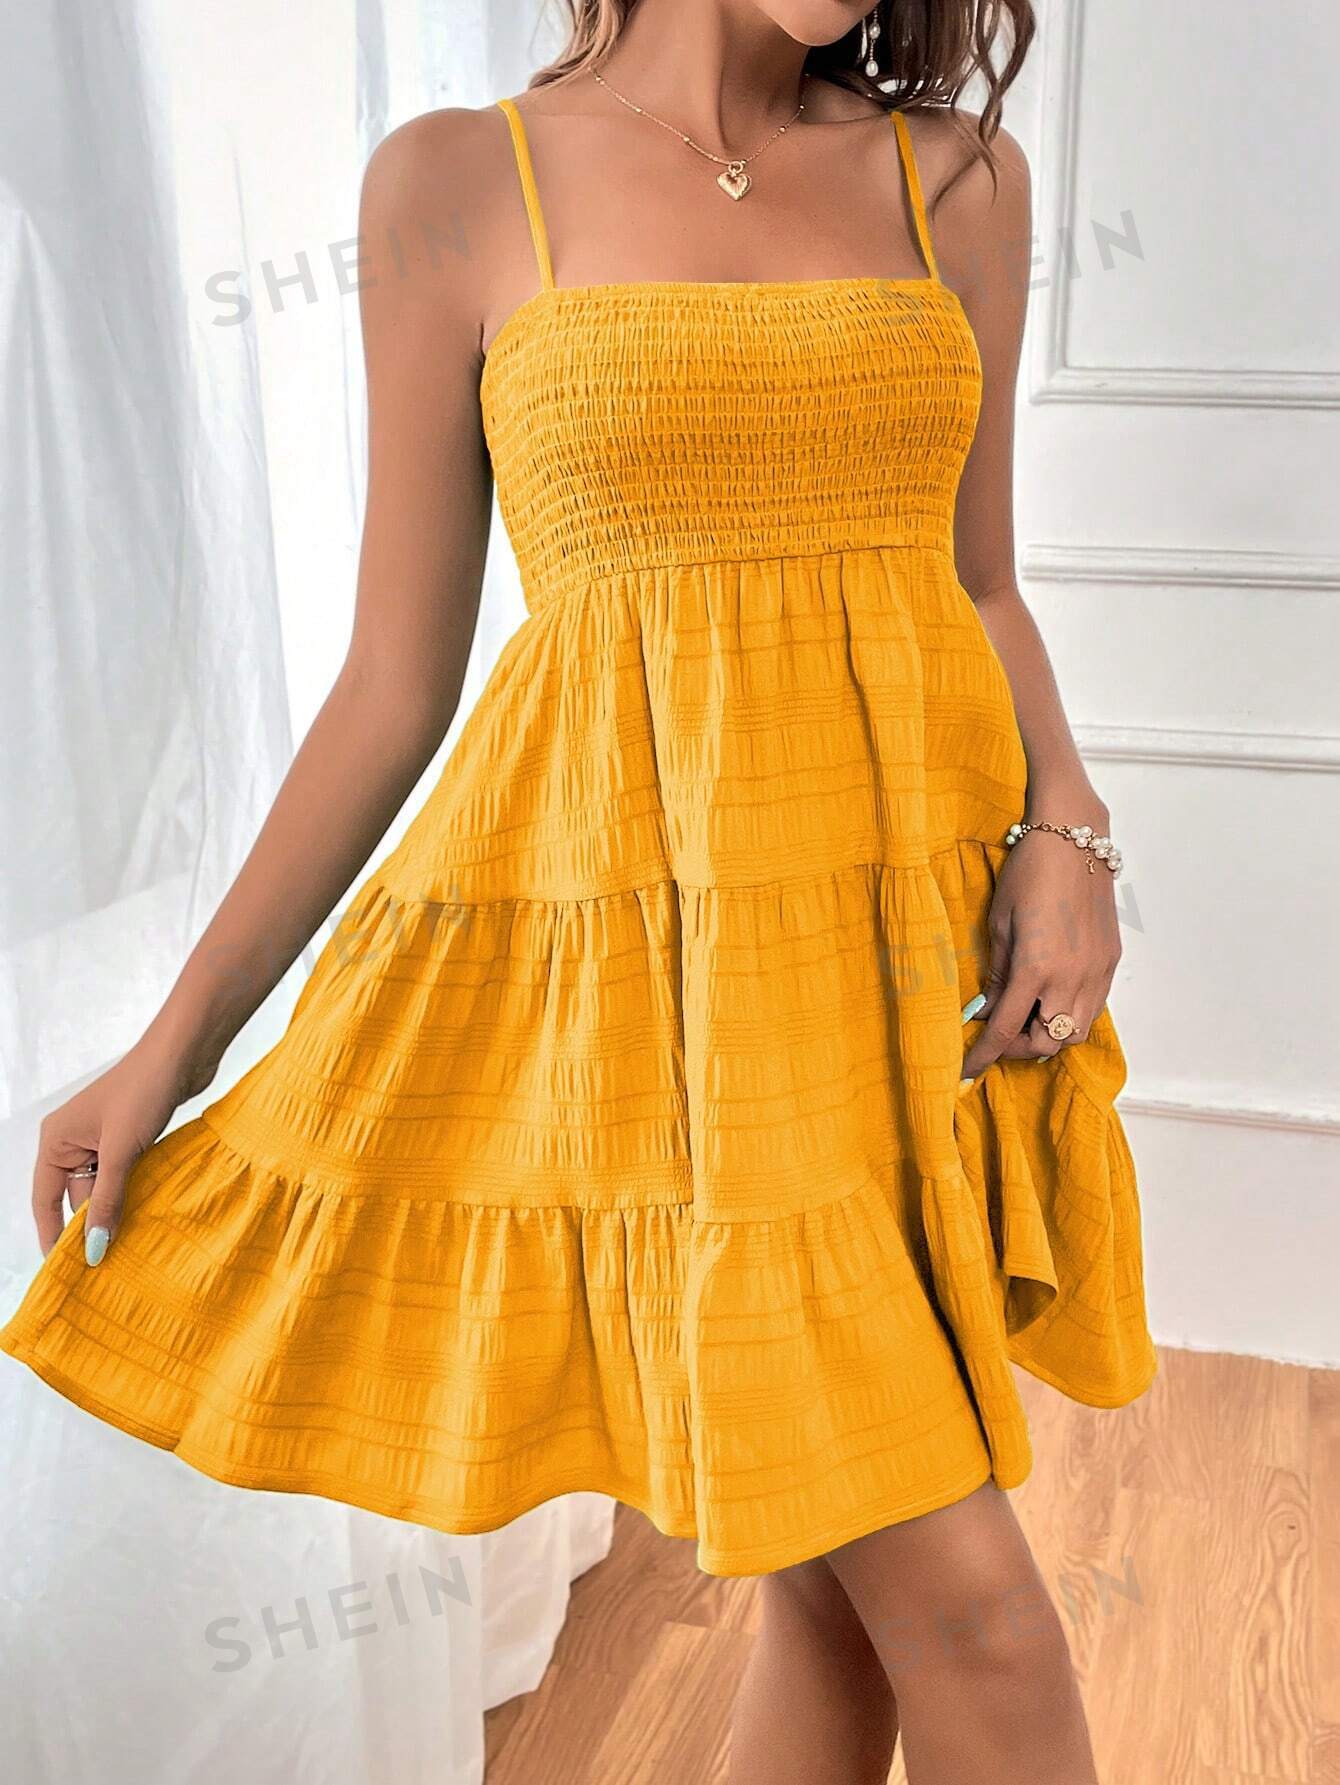 SHEIN WYWH Женское однотонное платье на тонких бретельках с оборками и подолом, горчично-желтый